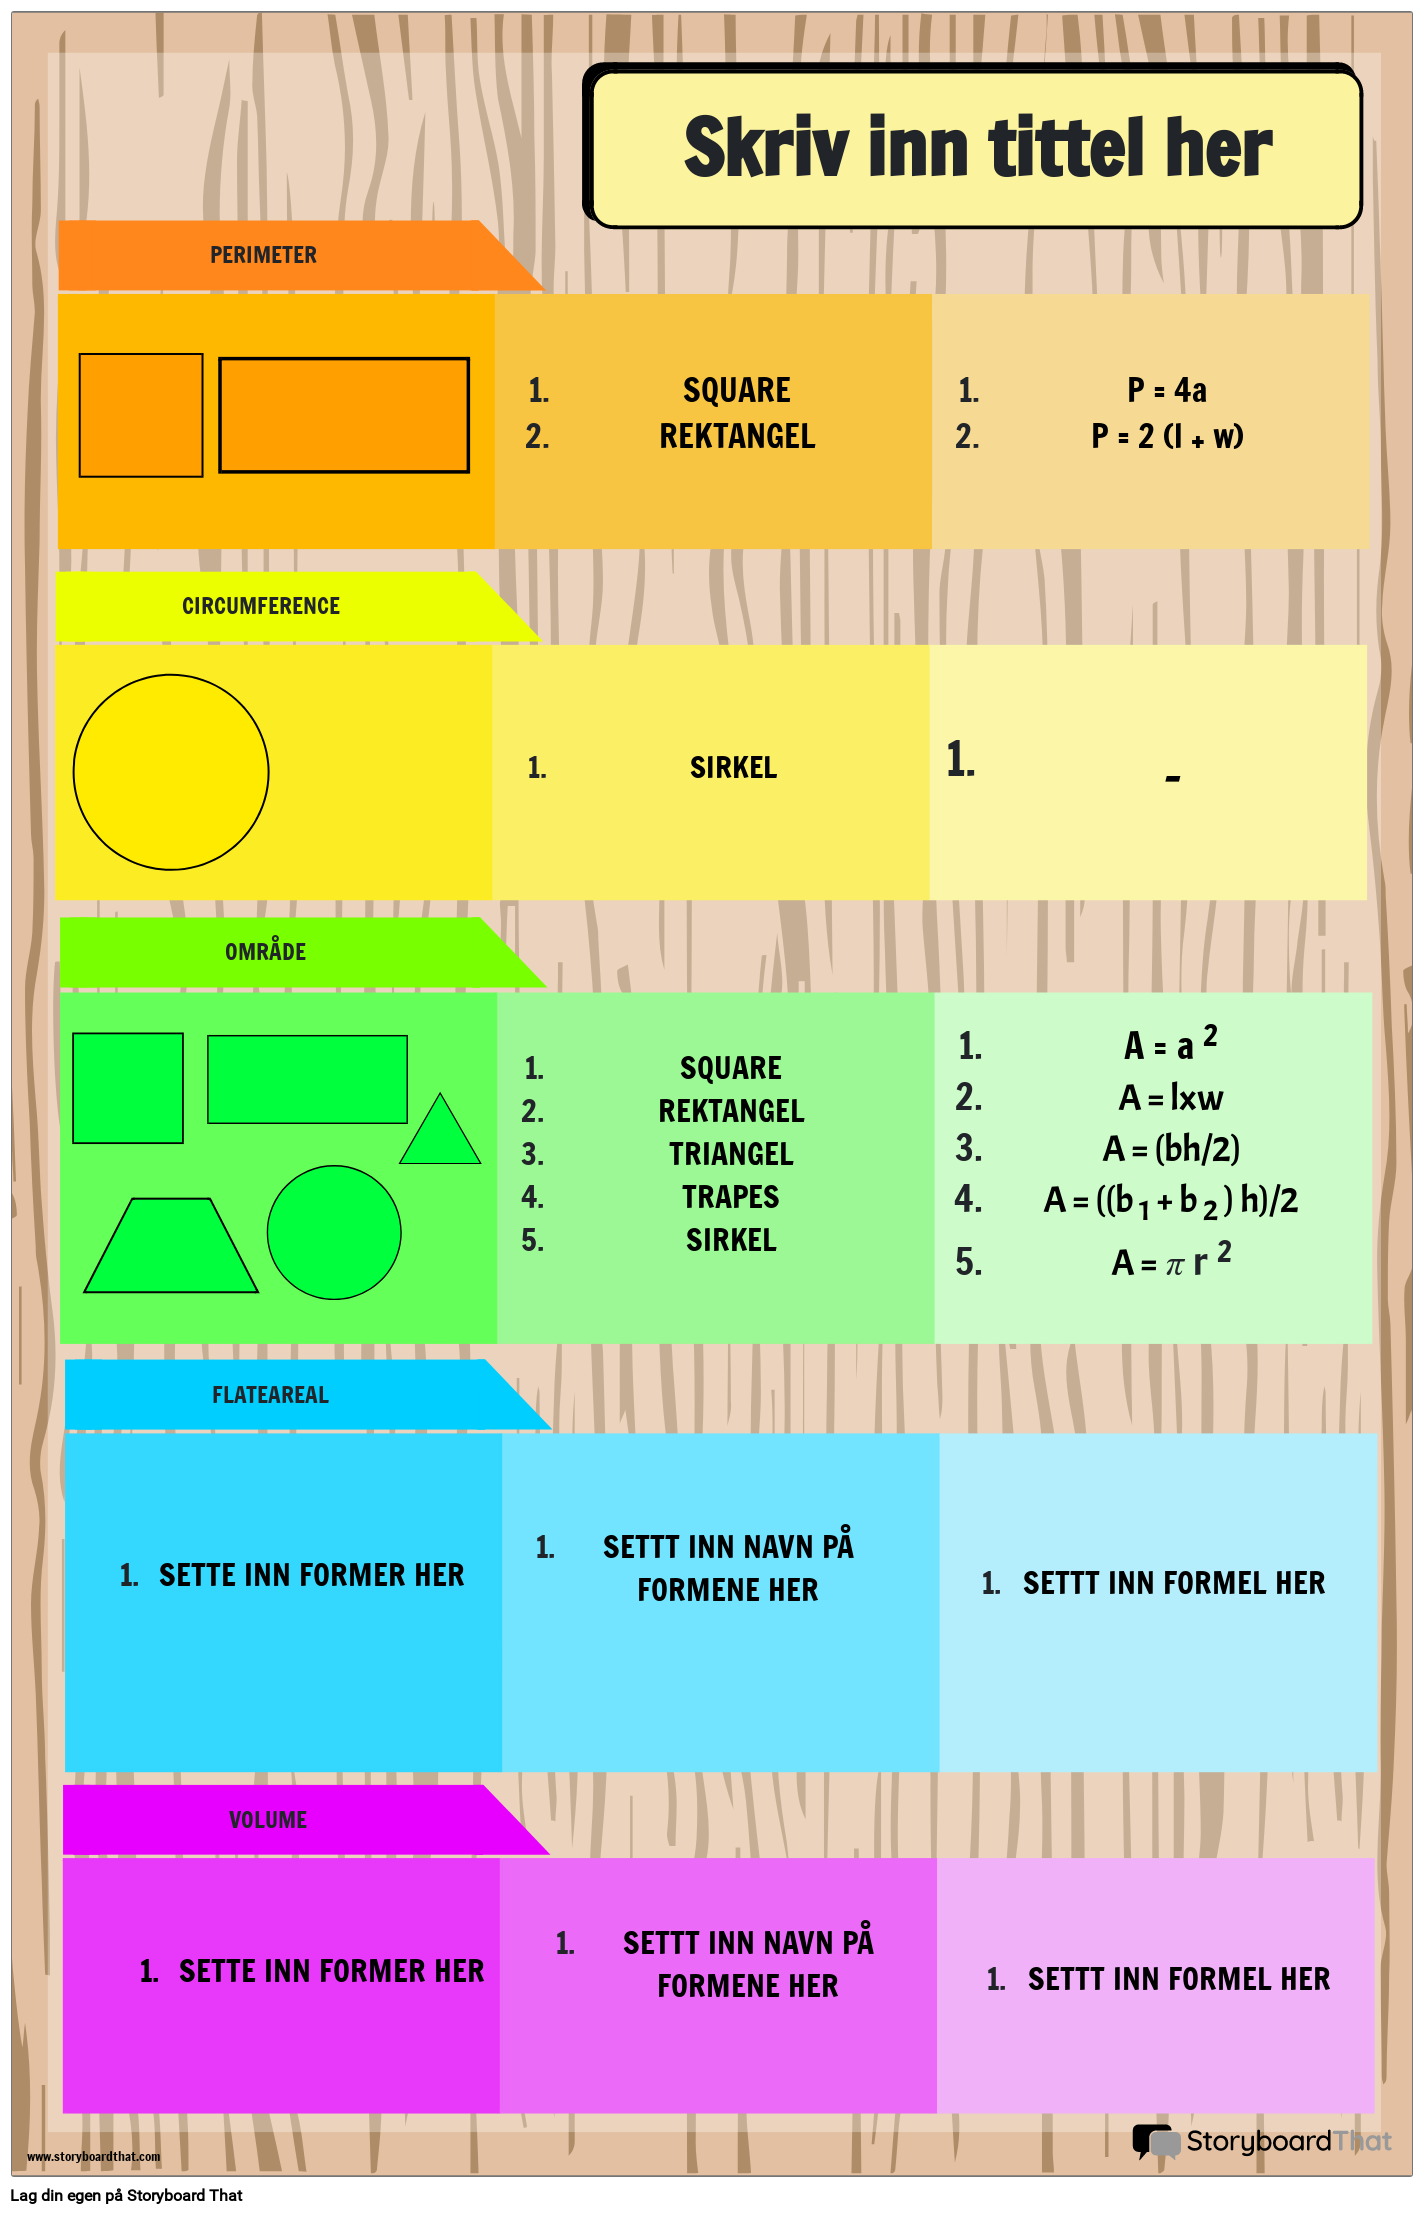 Grunnleggende matematikkformelplakat med former og regnbuefarger